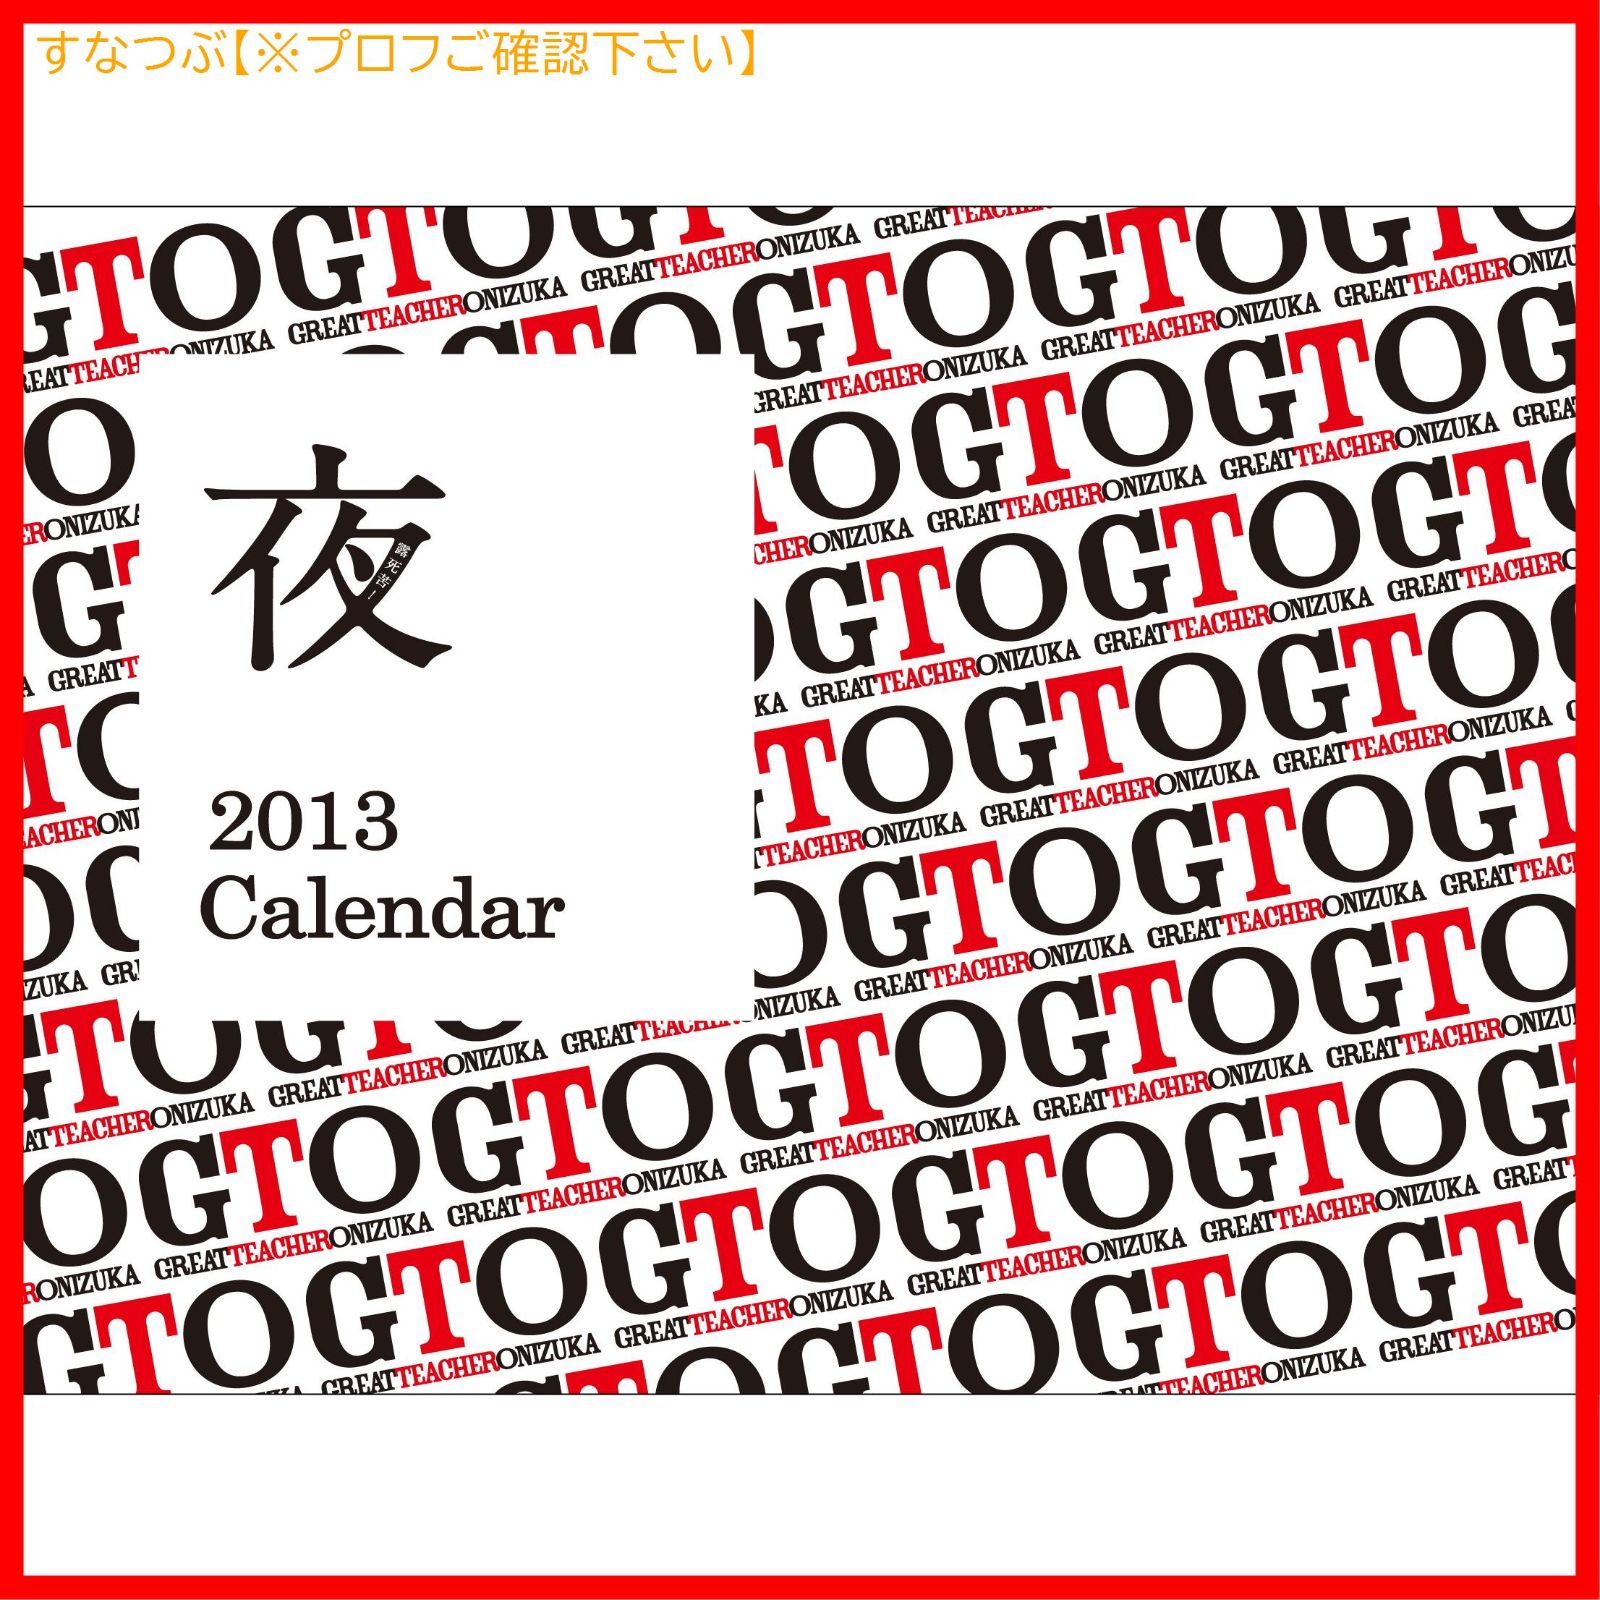 【新品未開封】GTO(2012) DVD-BOX AKIRA (出演) 瀧本美織 (出演) 形式: DVD